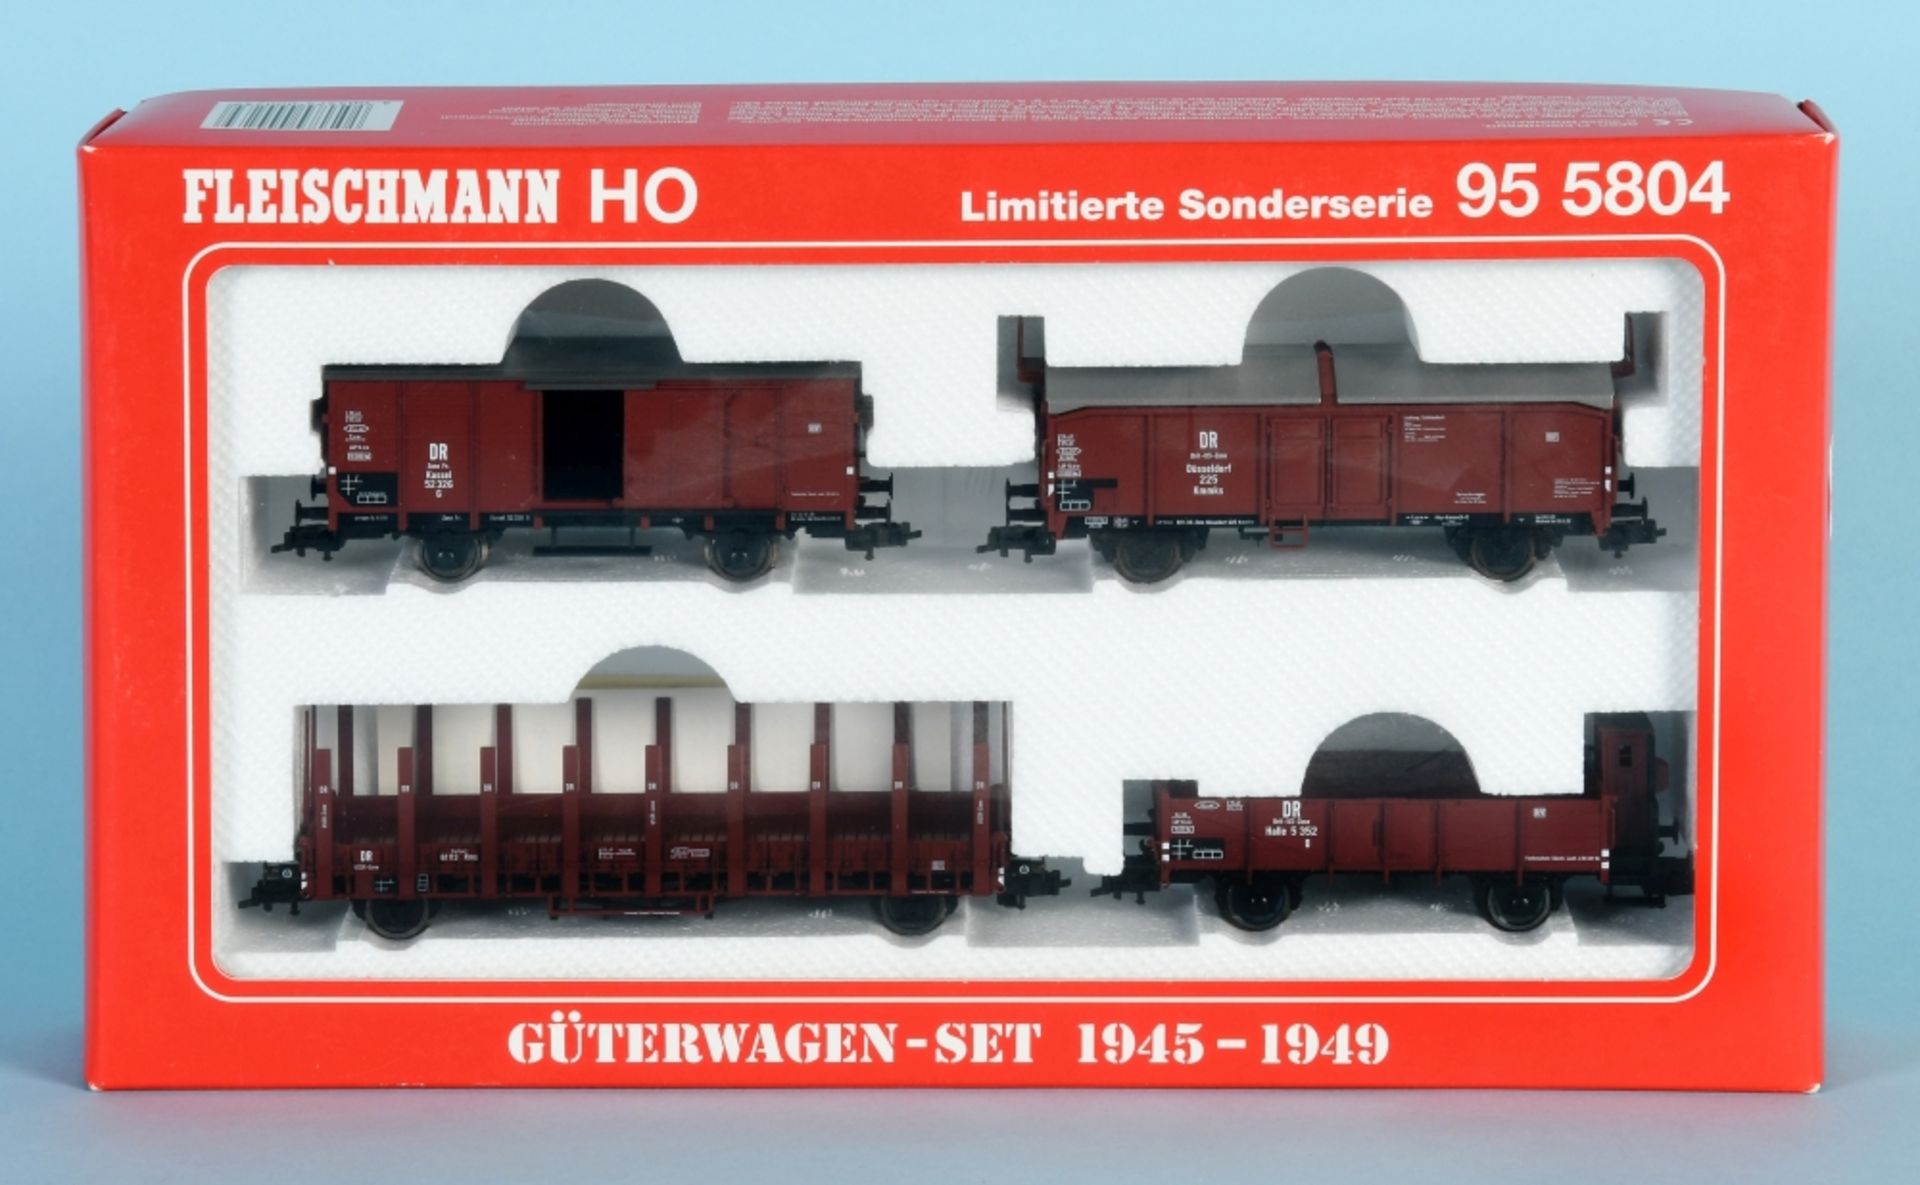 Fleischmann - Güterwagen-Set 1945-1949, Nr. 95 5804